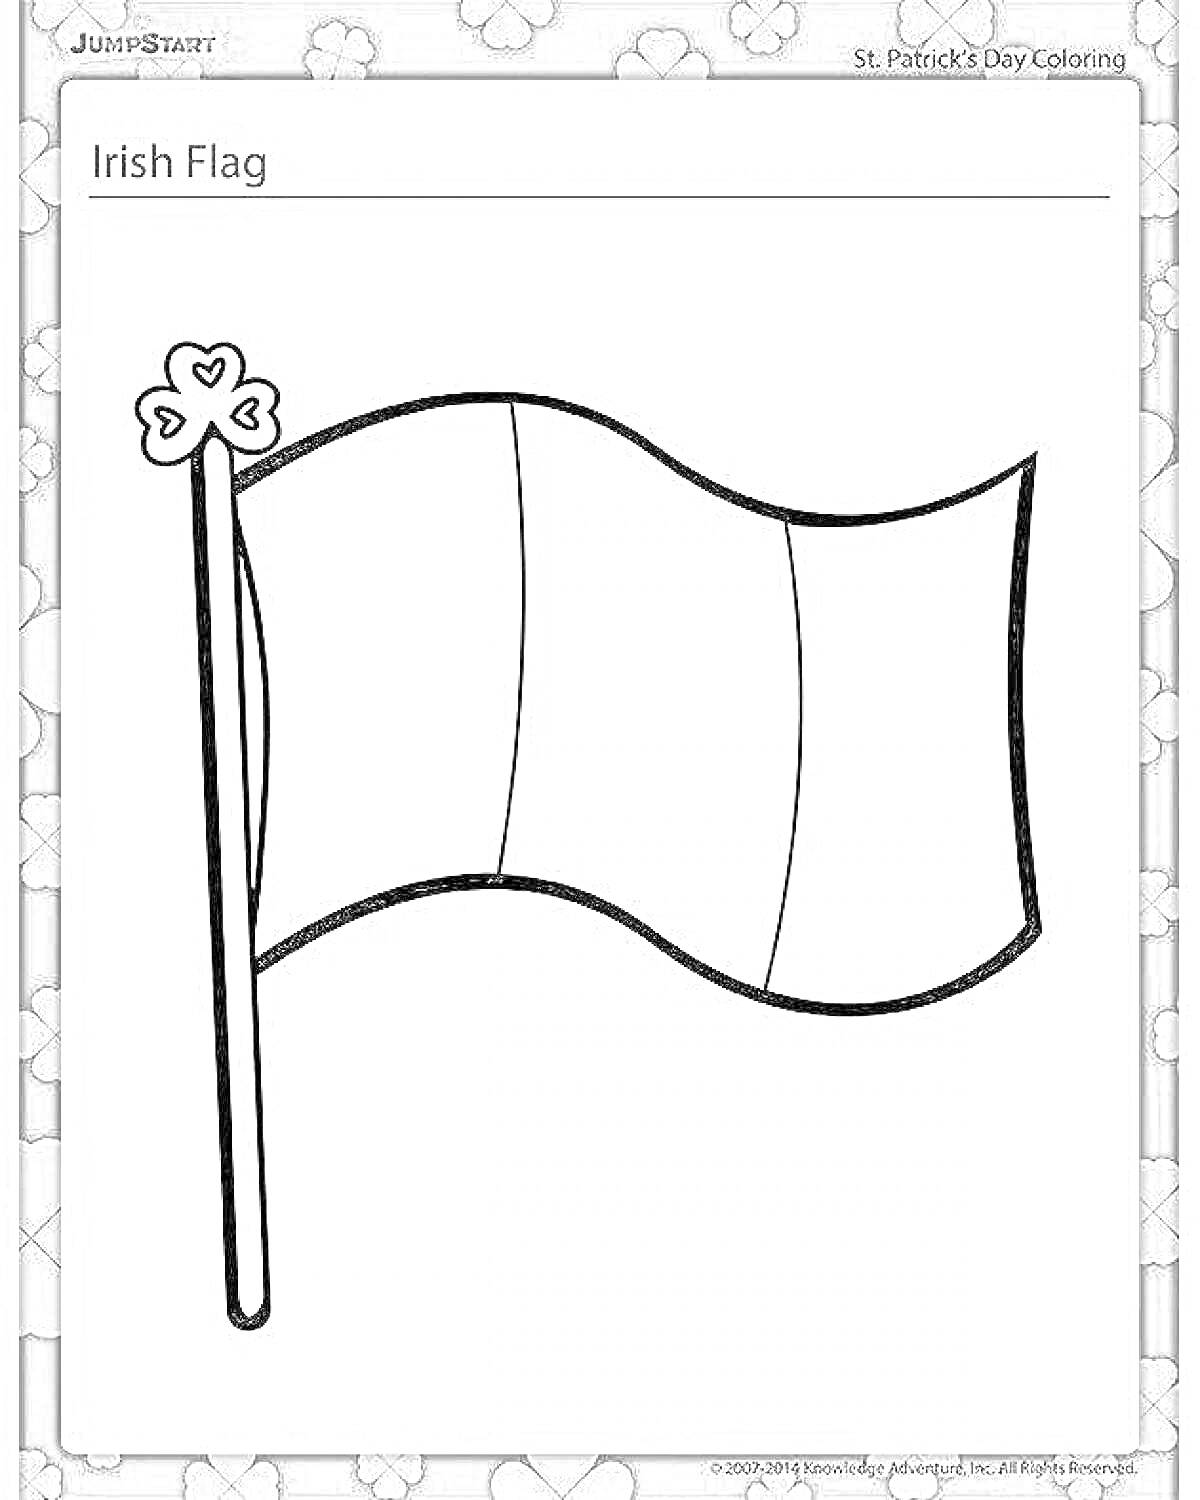 Раскраска Черно-белое изображение флага с вертикальными полосами и трилистником на флагштоке